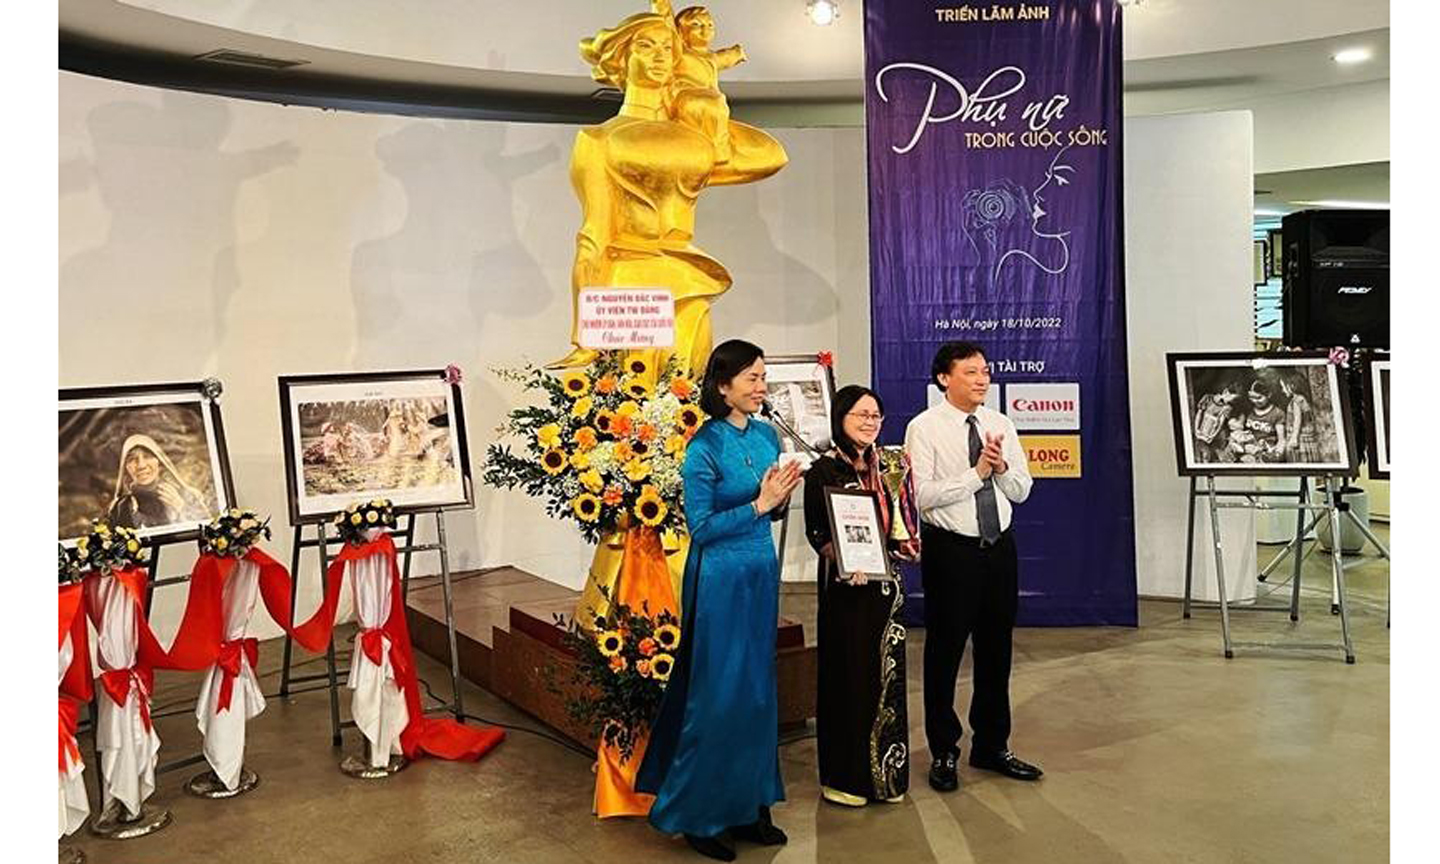 Tác giả Võ Thị Kim Cương (đứng giữa) nhận Huy chương Vàng của cuộc thi.